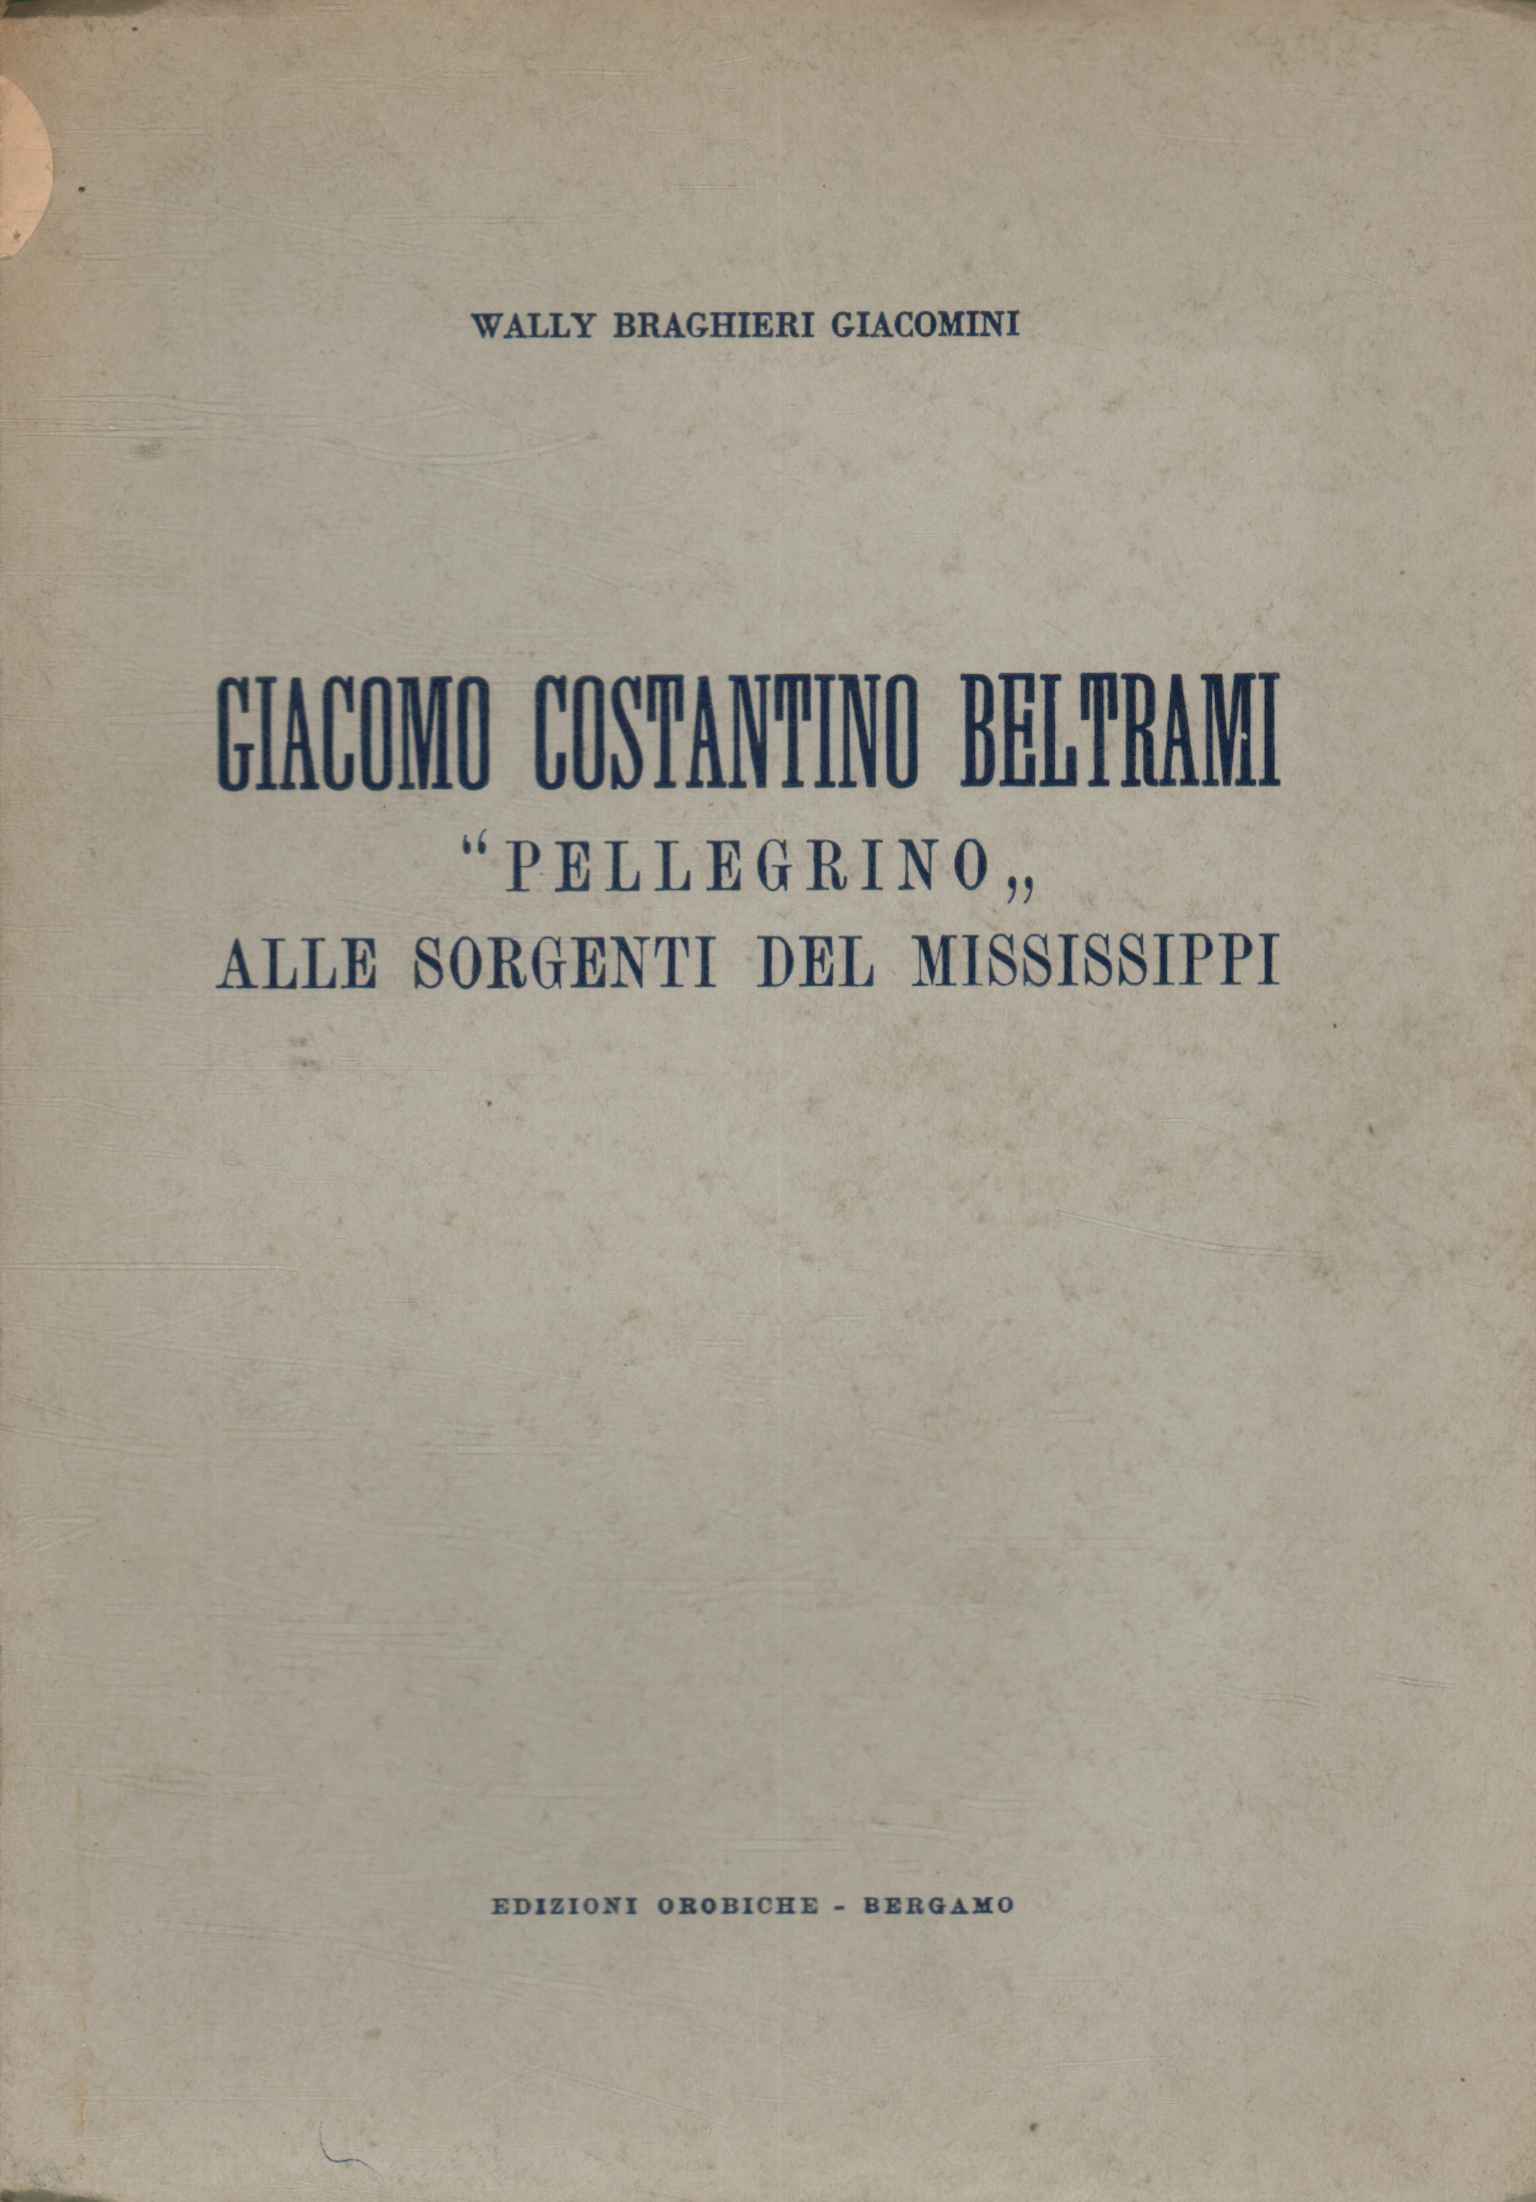 Giacomo Costantino Beltrami peregrino todo